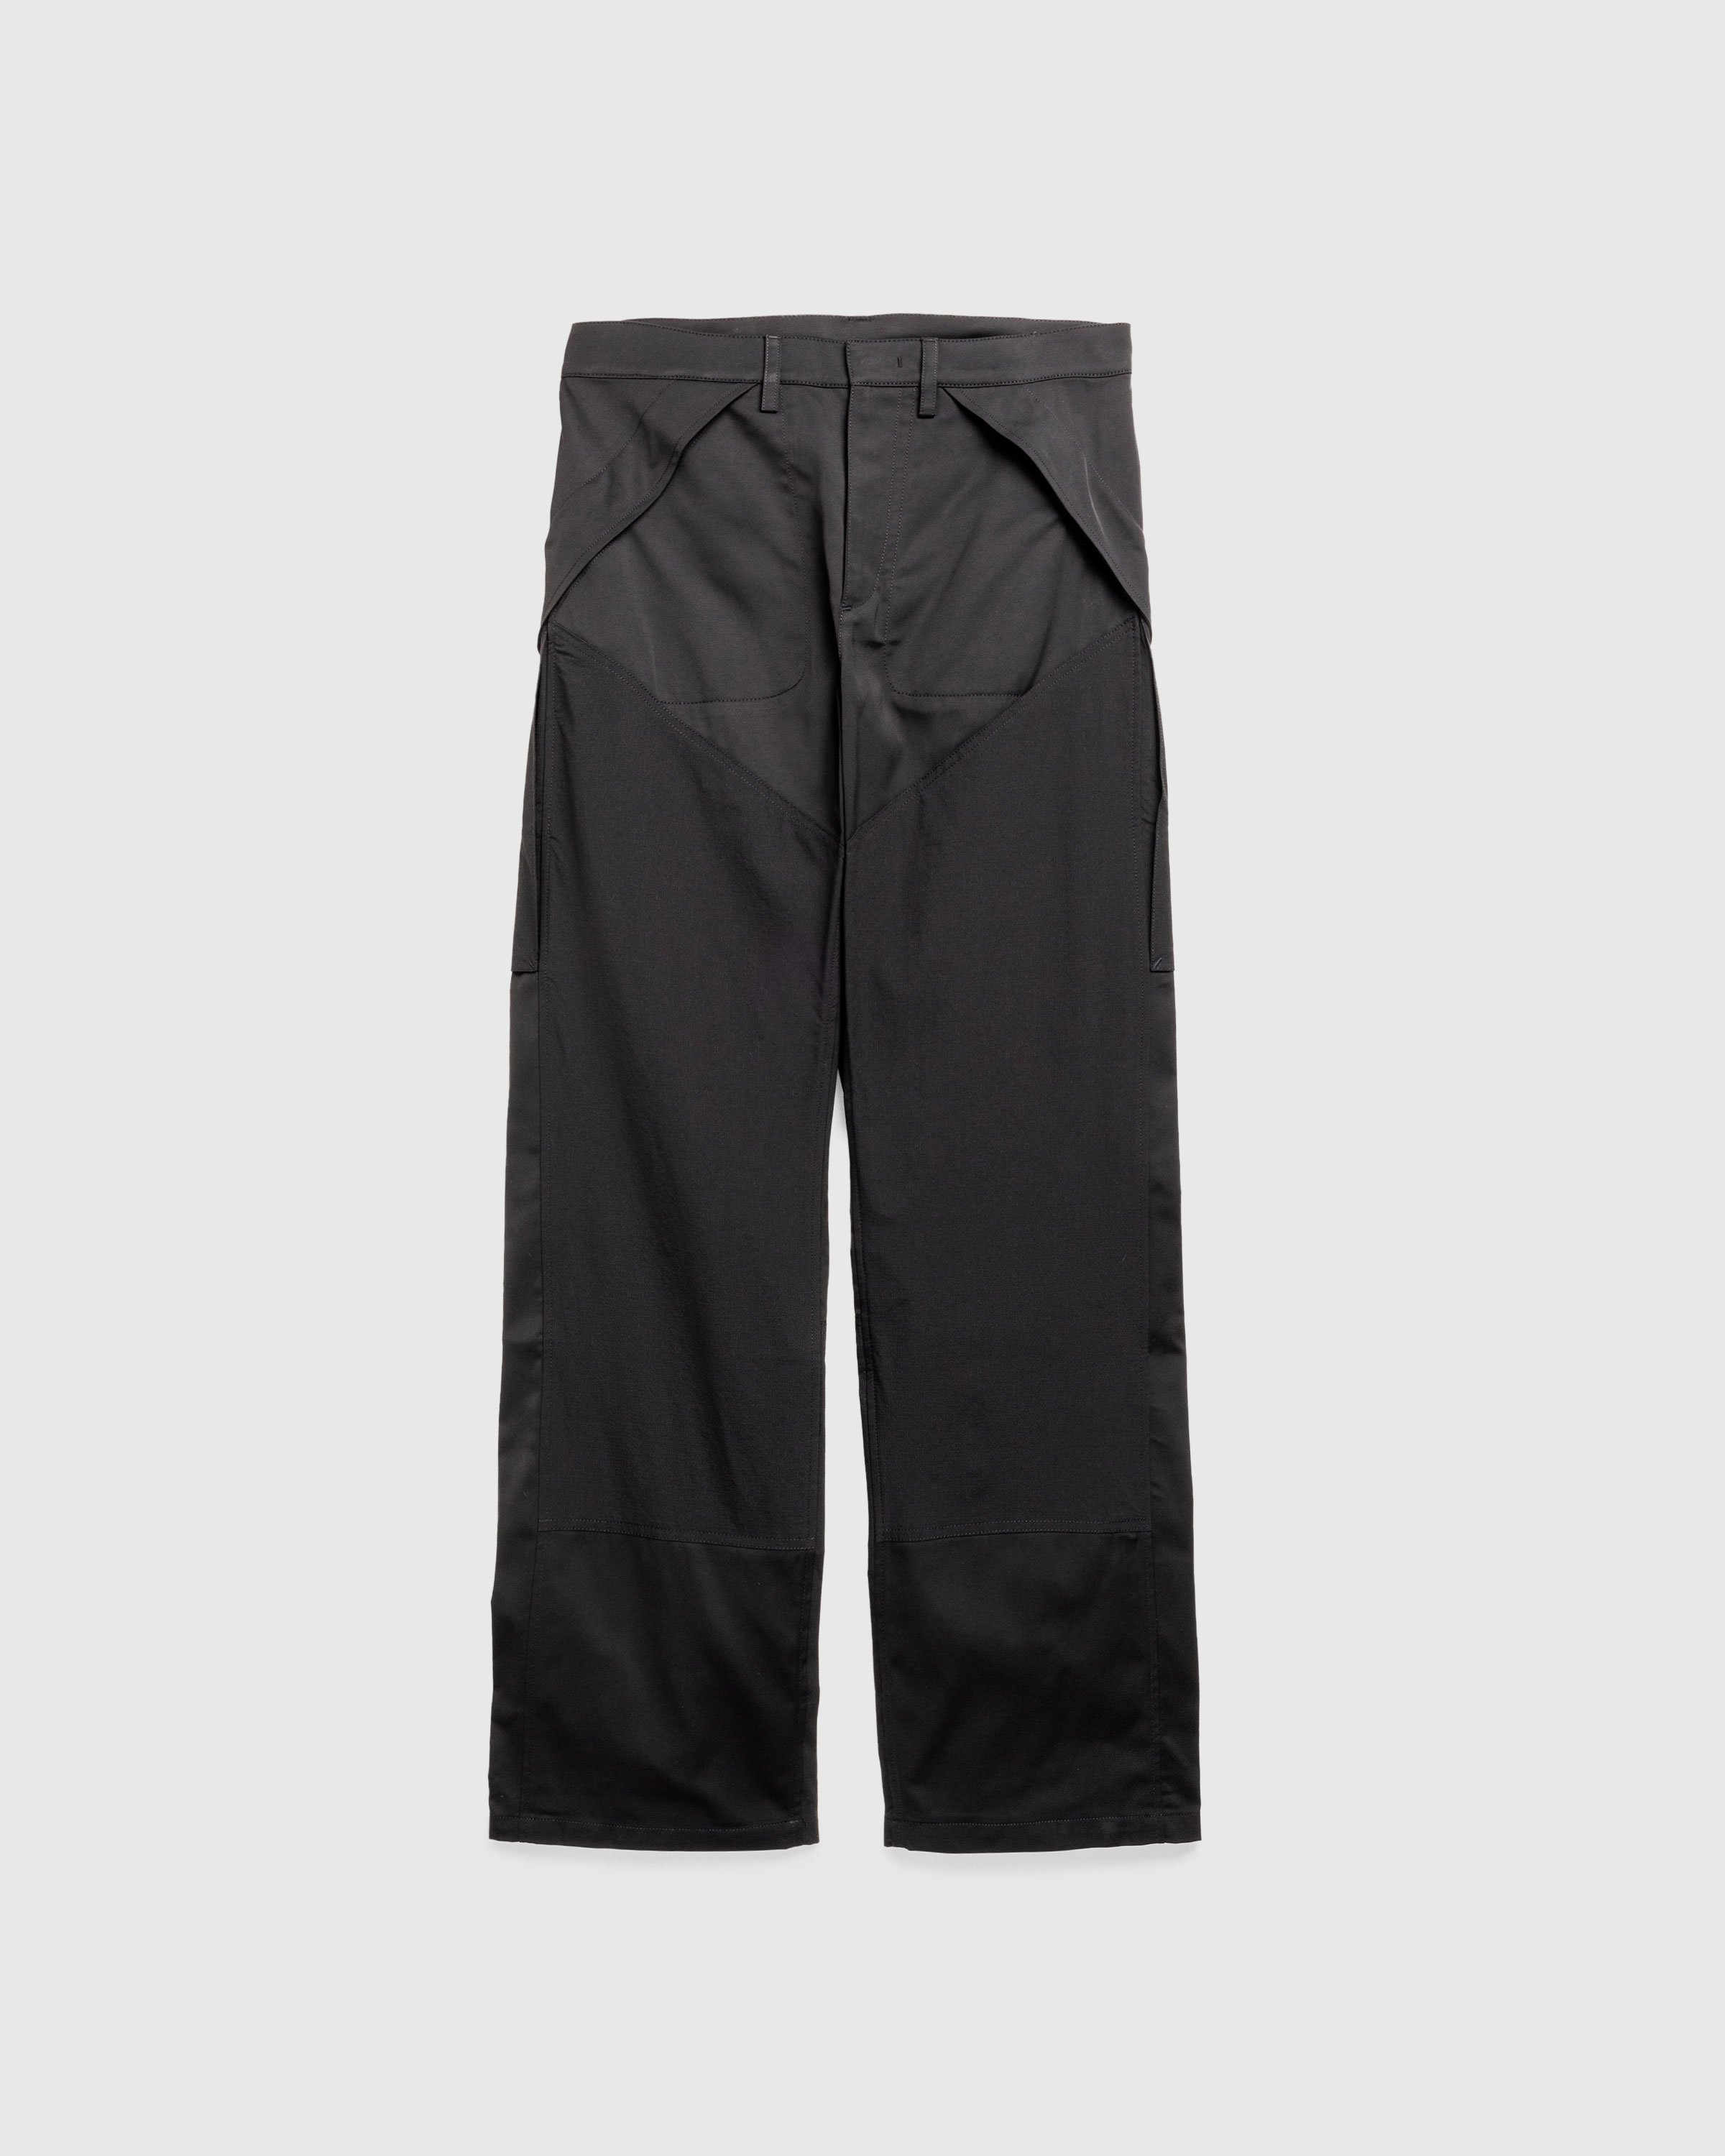 ROA - Cargo Trousers Black - Clothing -  - Image 1